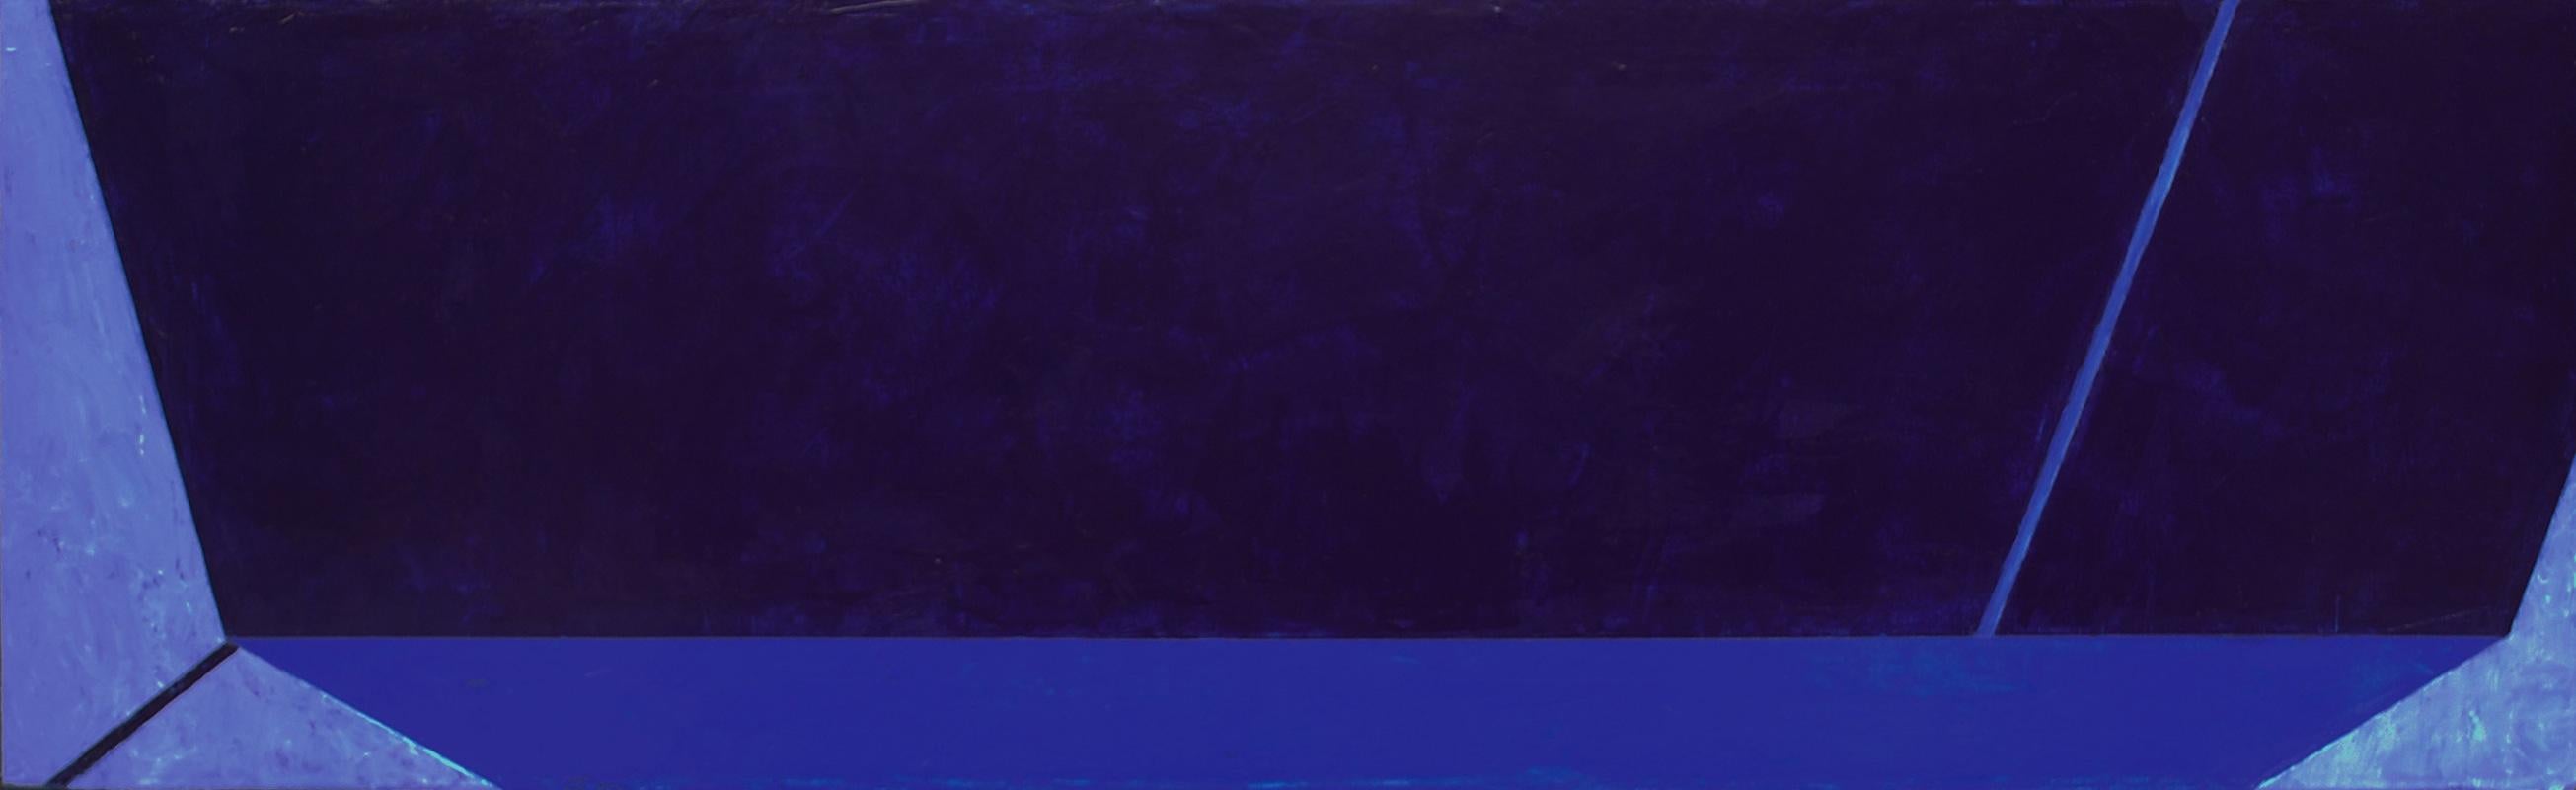 Macyn Bolt, Dark Pool I, acrylic on canvas, Minimalist, 18 x 60, 2018